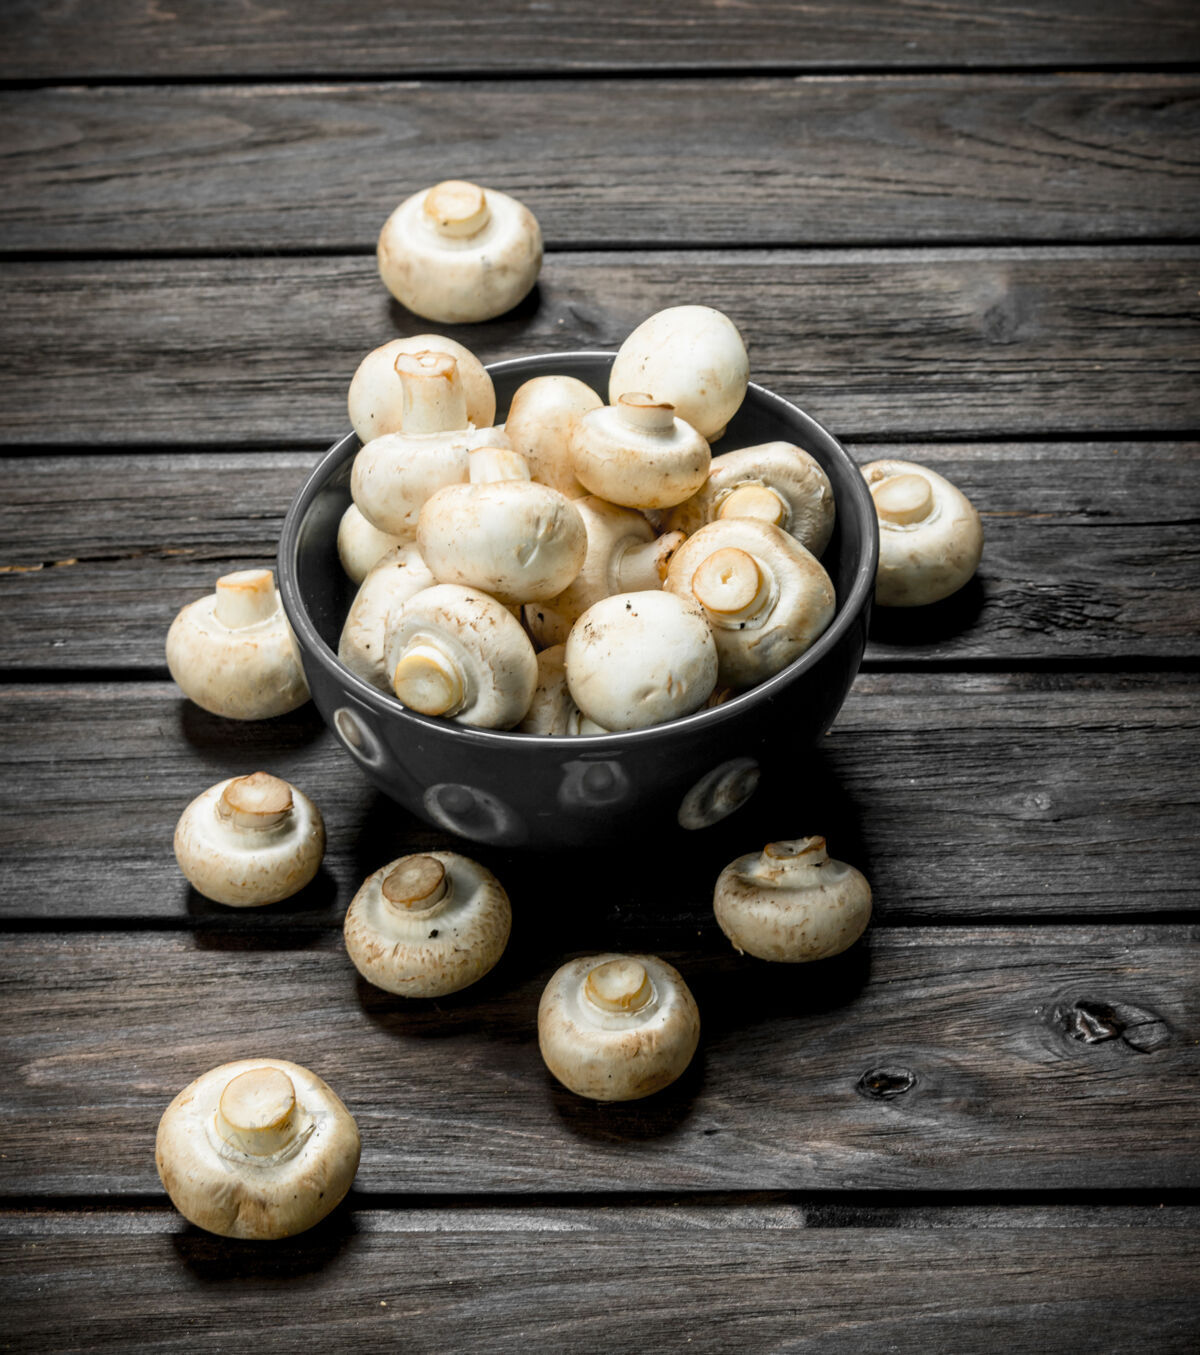 可食食品香喷喷的鲜蘑菇碗开黑色木质背景食用蘑菇栽培